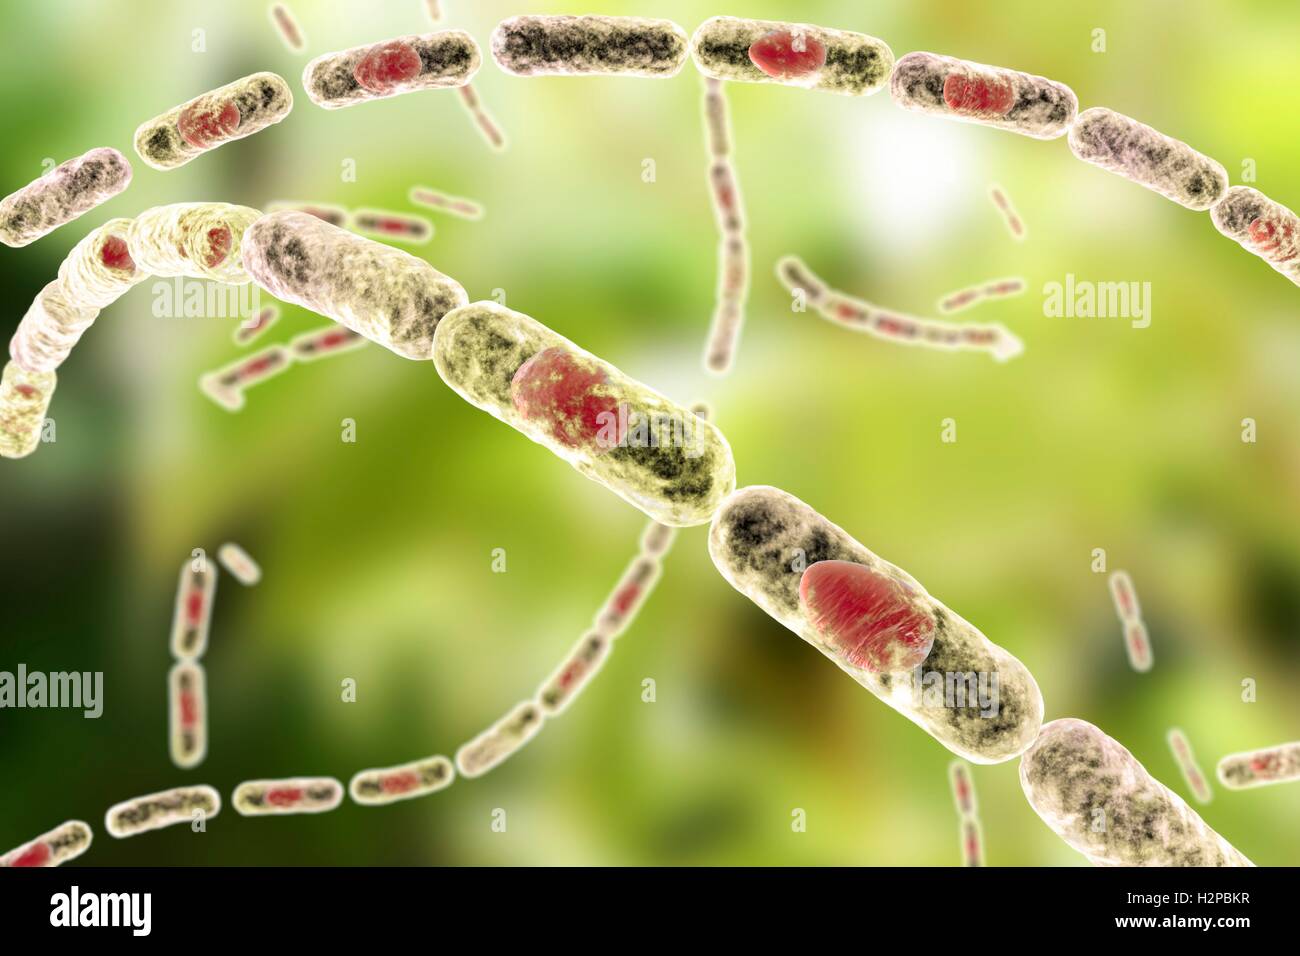 Milzbrandbakterien, Computer Bild. Anthrax-Bakterien (Bacillus Anthracis) sind die Ursache für die Krankheit Milzbrand bei Mensch und Vieh. Sie sind grampositive Spore-produzierenden Bakterien, die in Ketten (Streptobacilli) angeordnet. Viele Zellen haben eine zentrale Spore (rot). Stockfoto